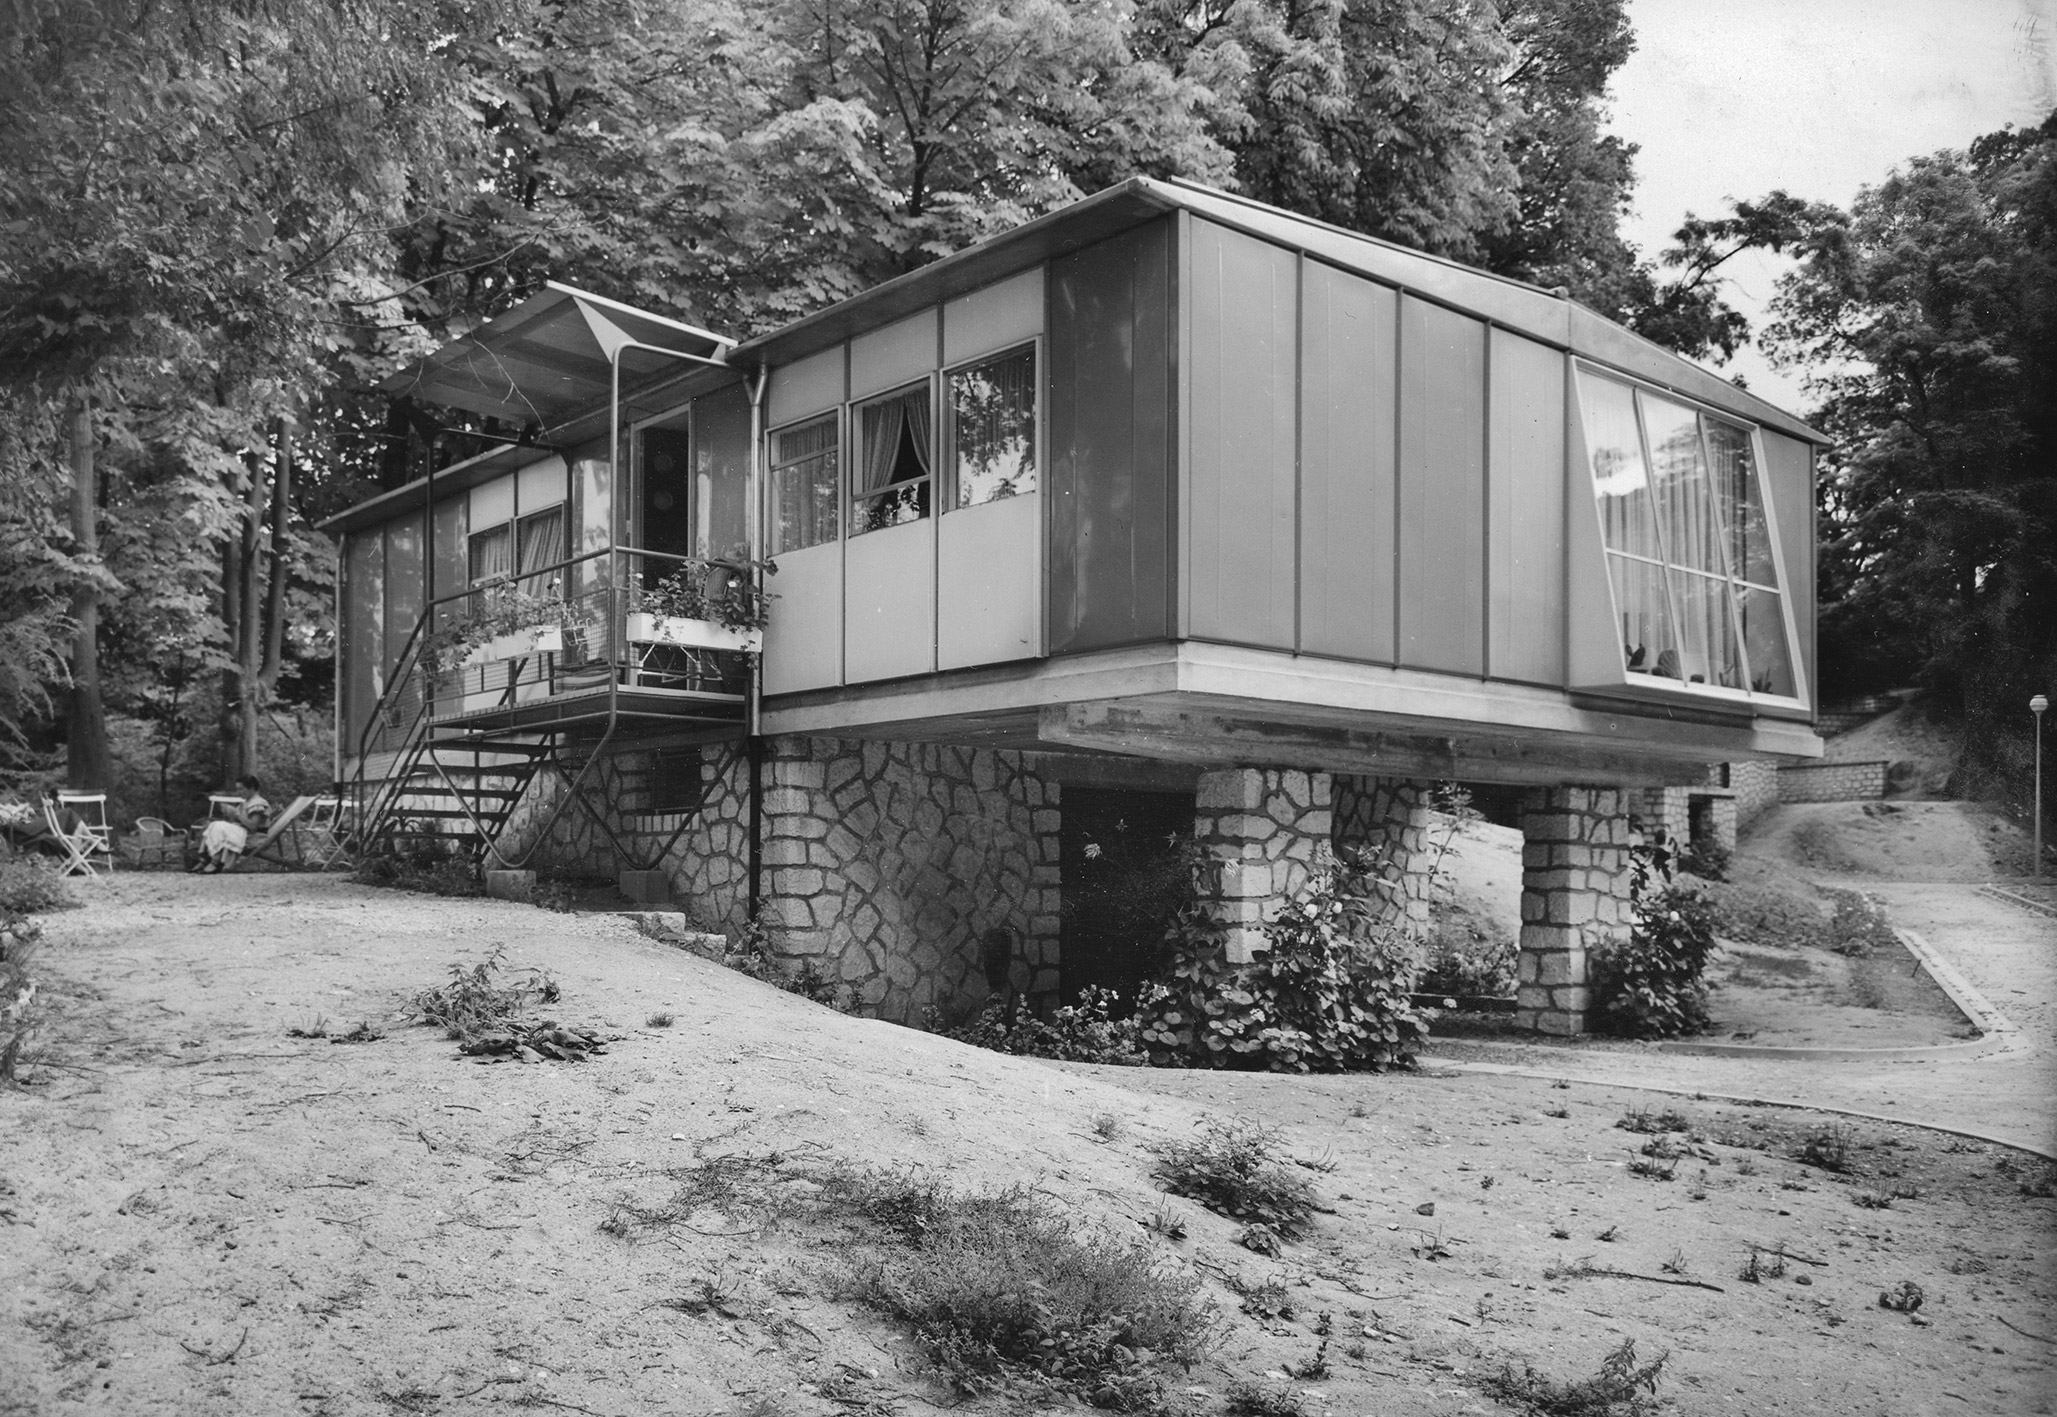 Métropole demountable house. Raised 8x12 houses, Meudon, ca. 1951.